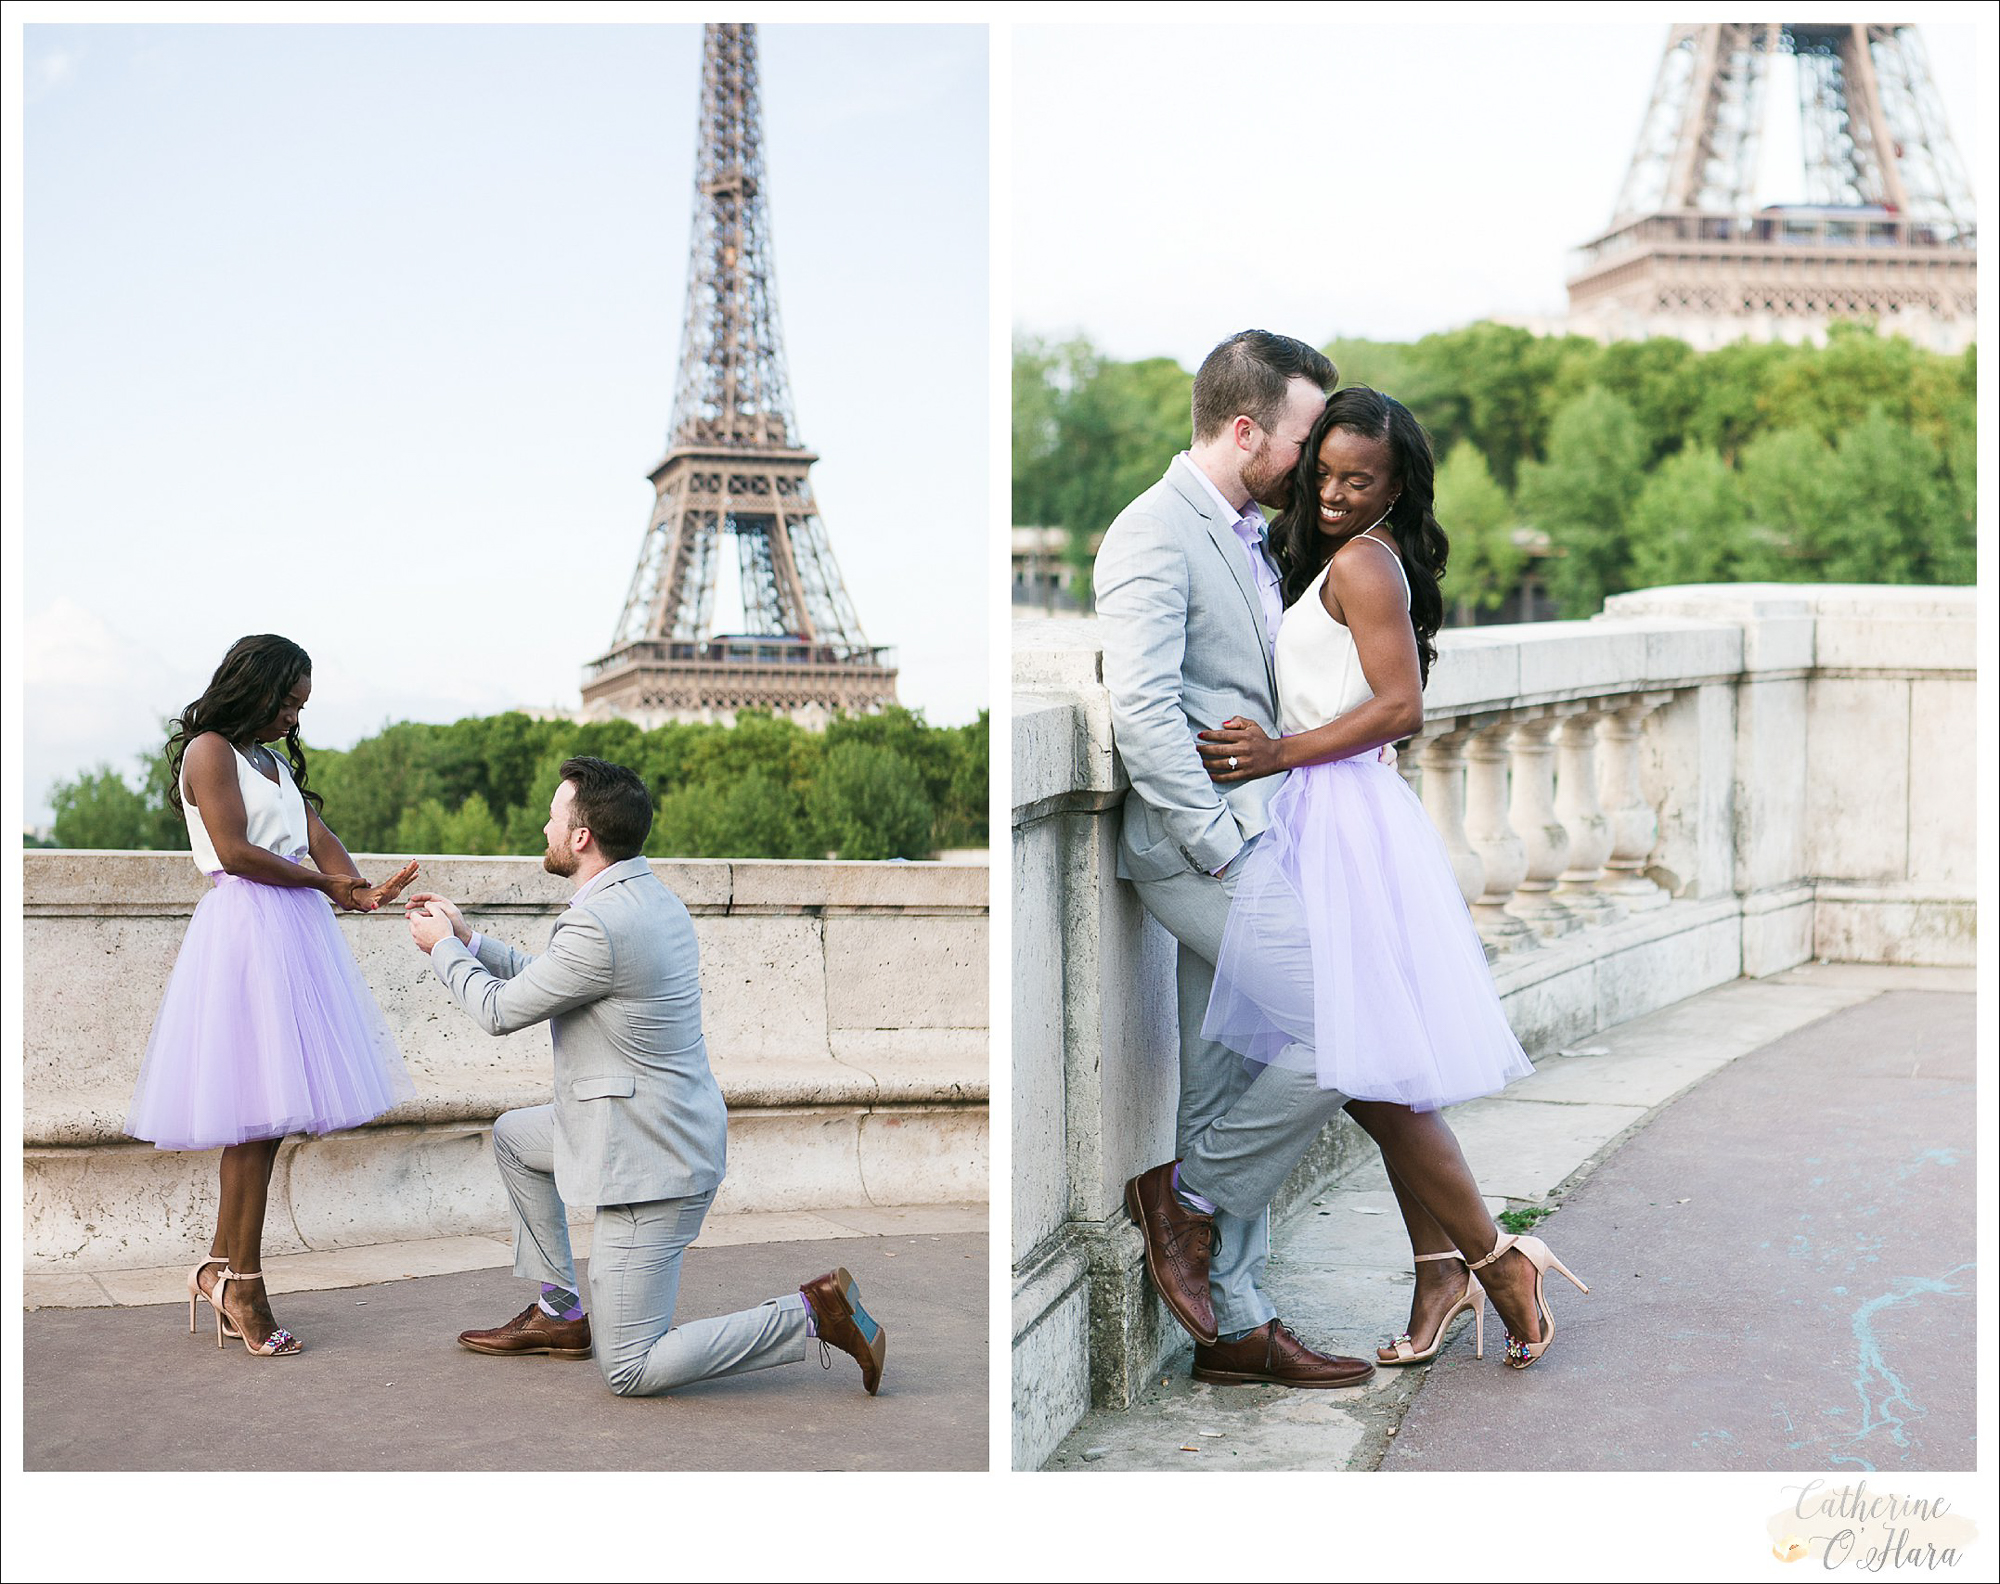 surprise proposal engagement photographer paris france-18.jpg